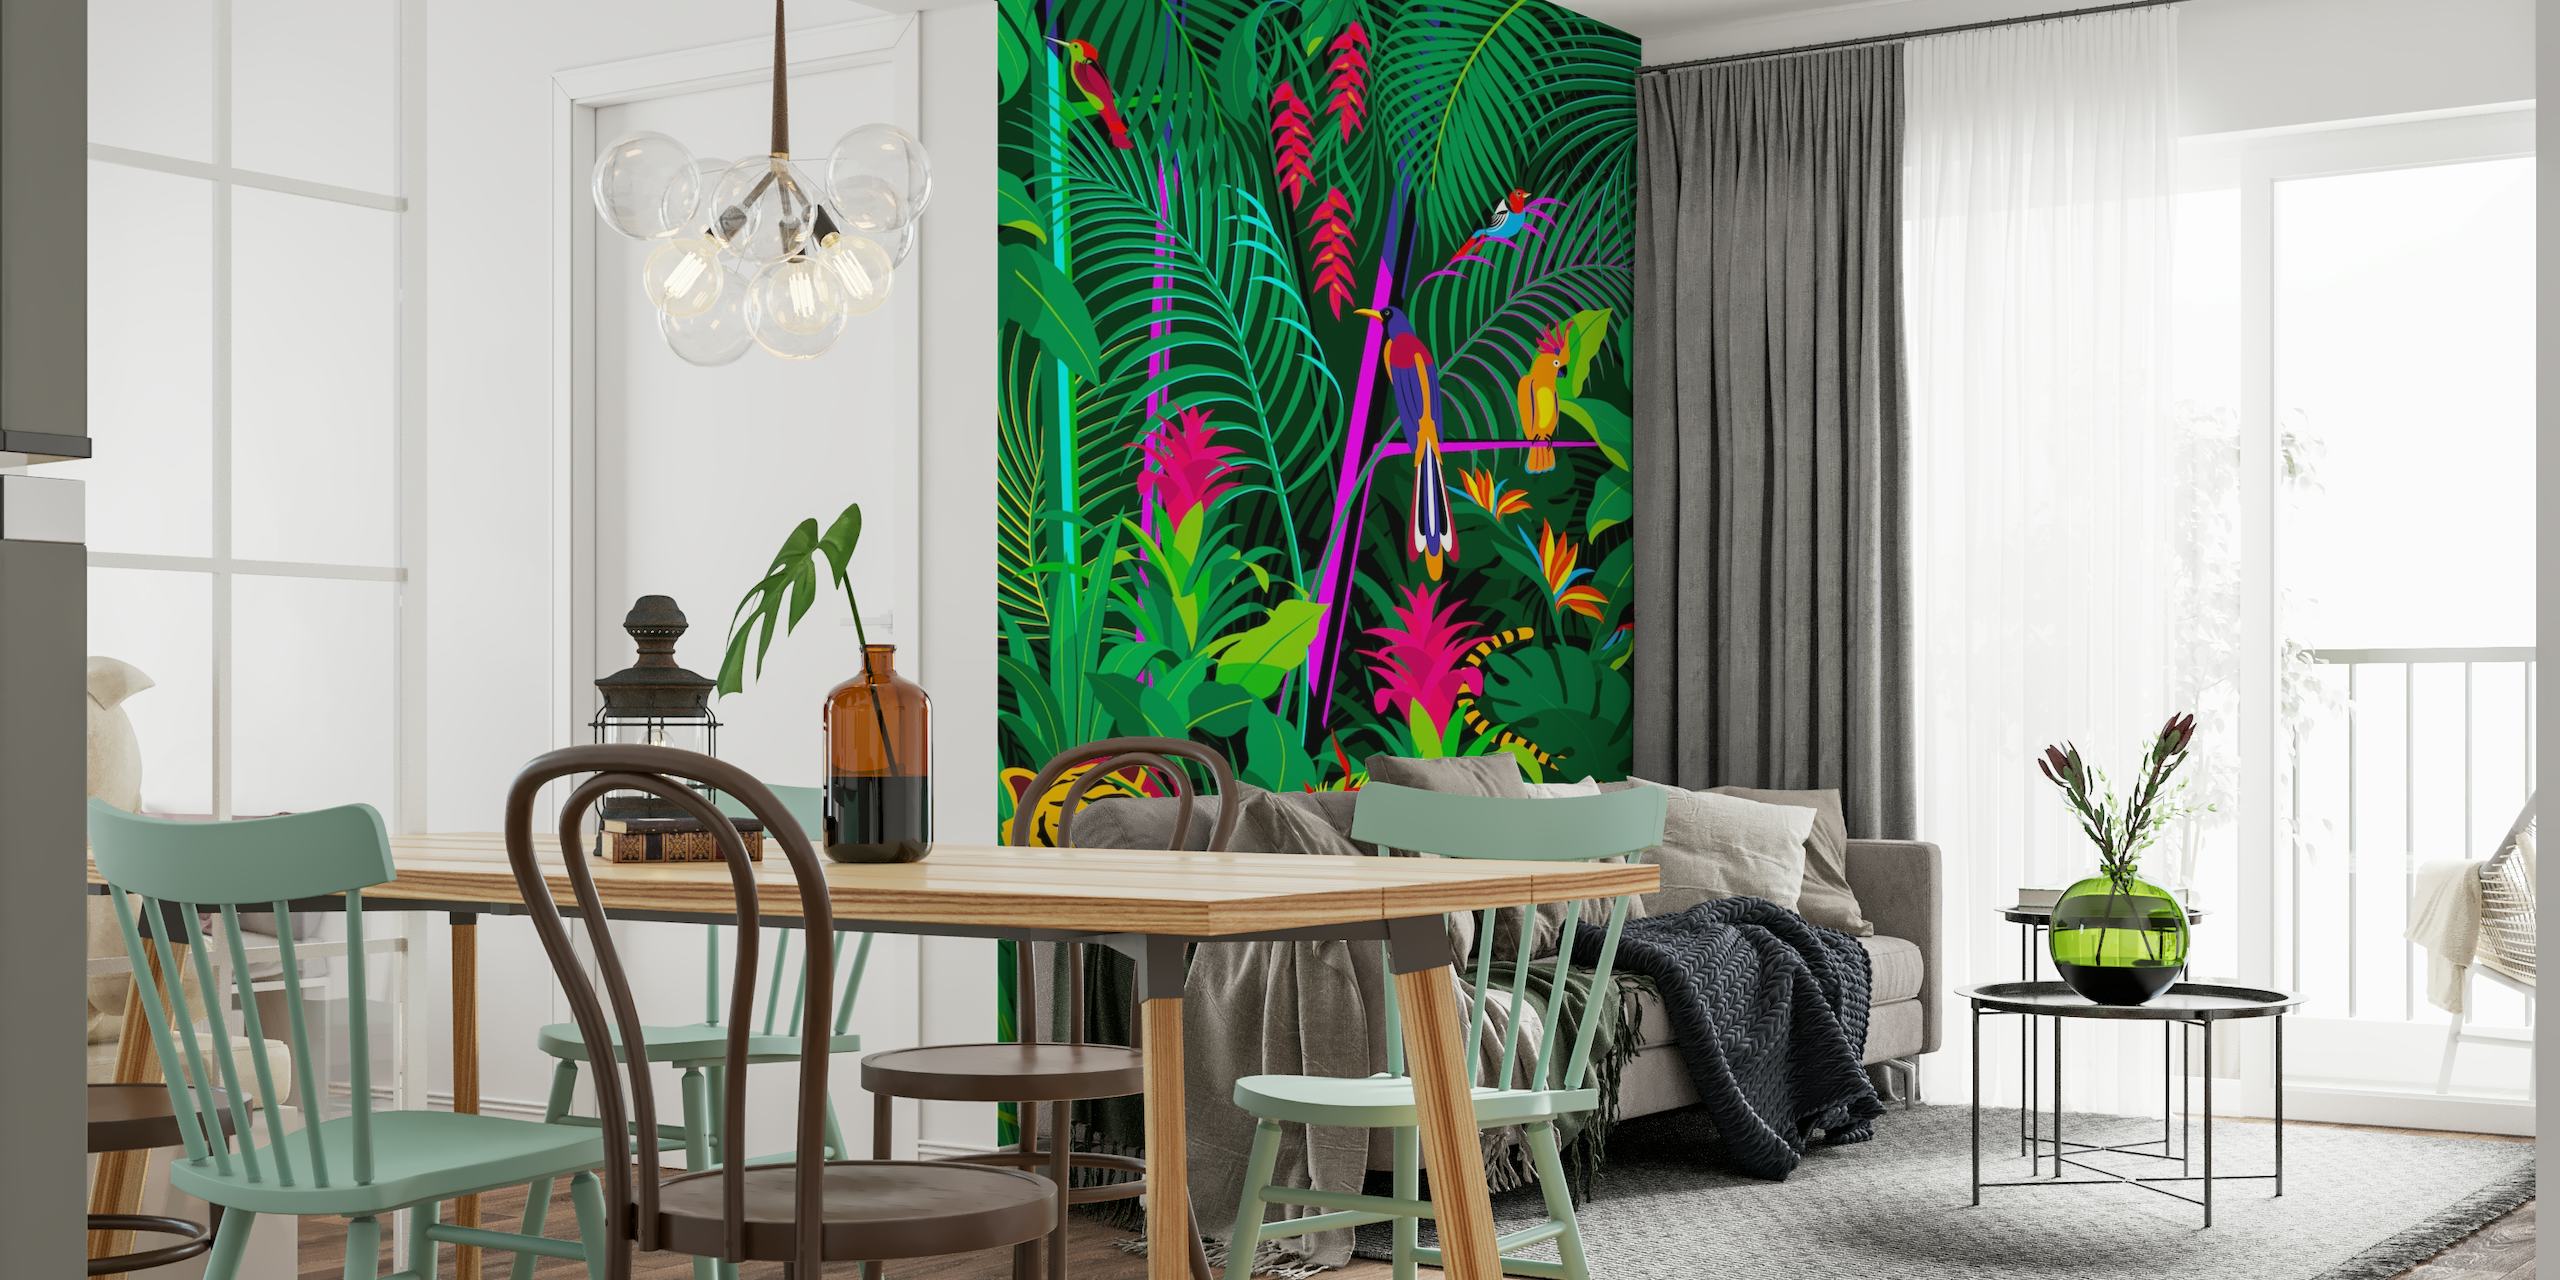 Zidna slika tropske džungle s gustim zelenim lišćem, šarenim cvijećem i skrivenim tigrom